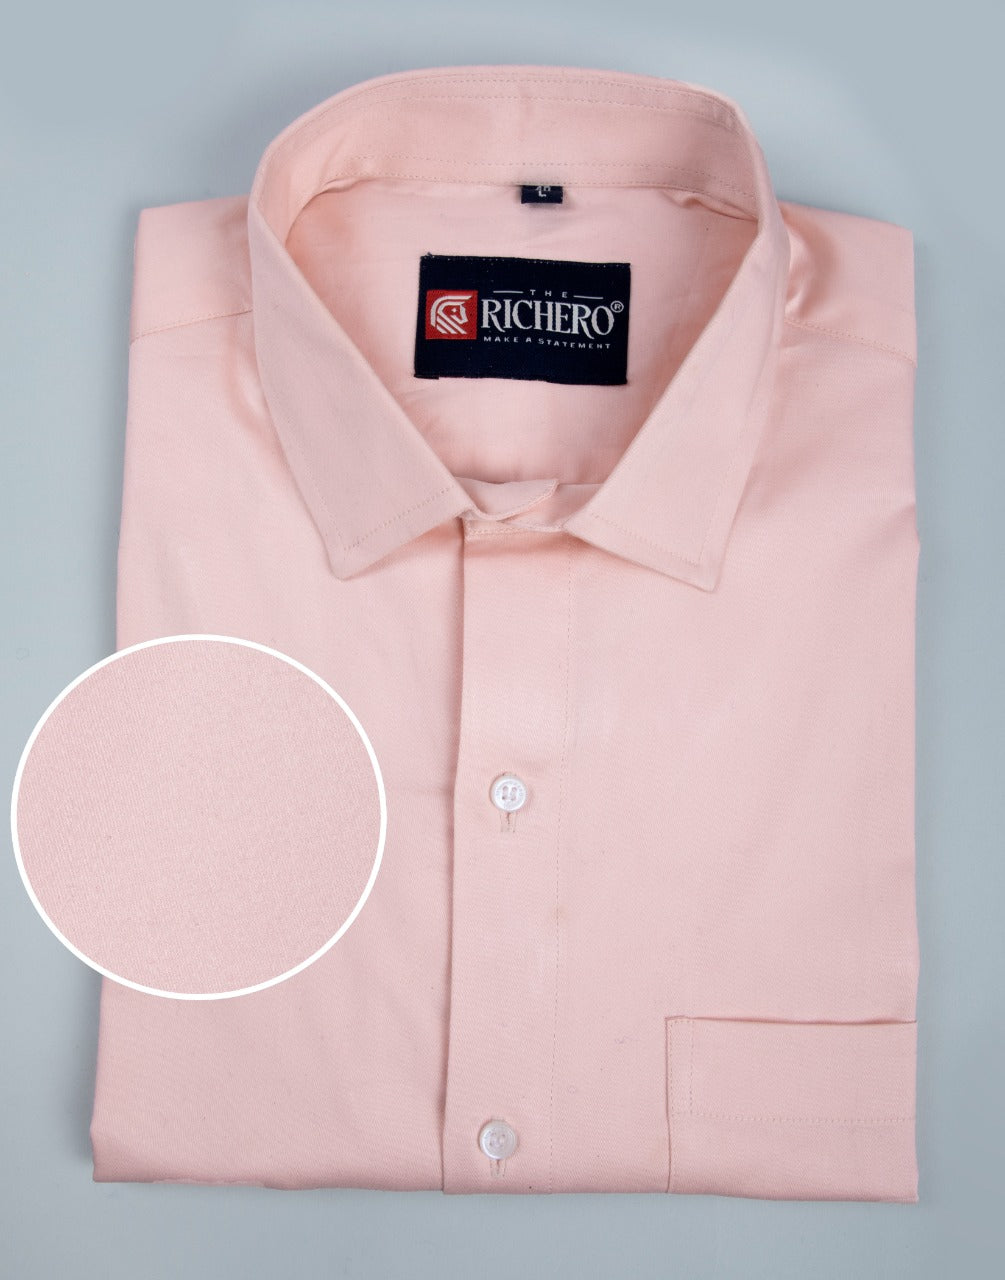 Light pink cotton formal plain shirt